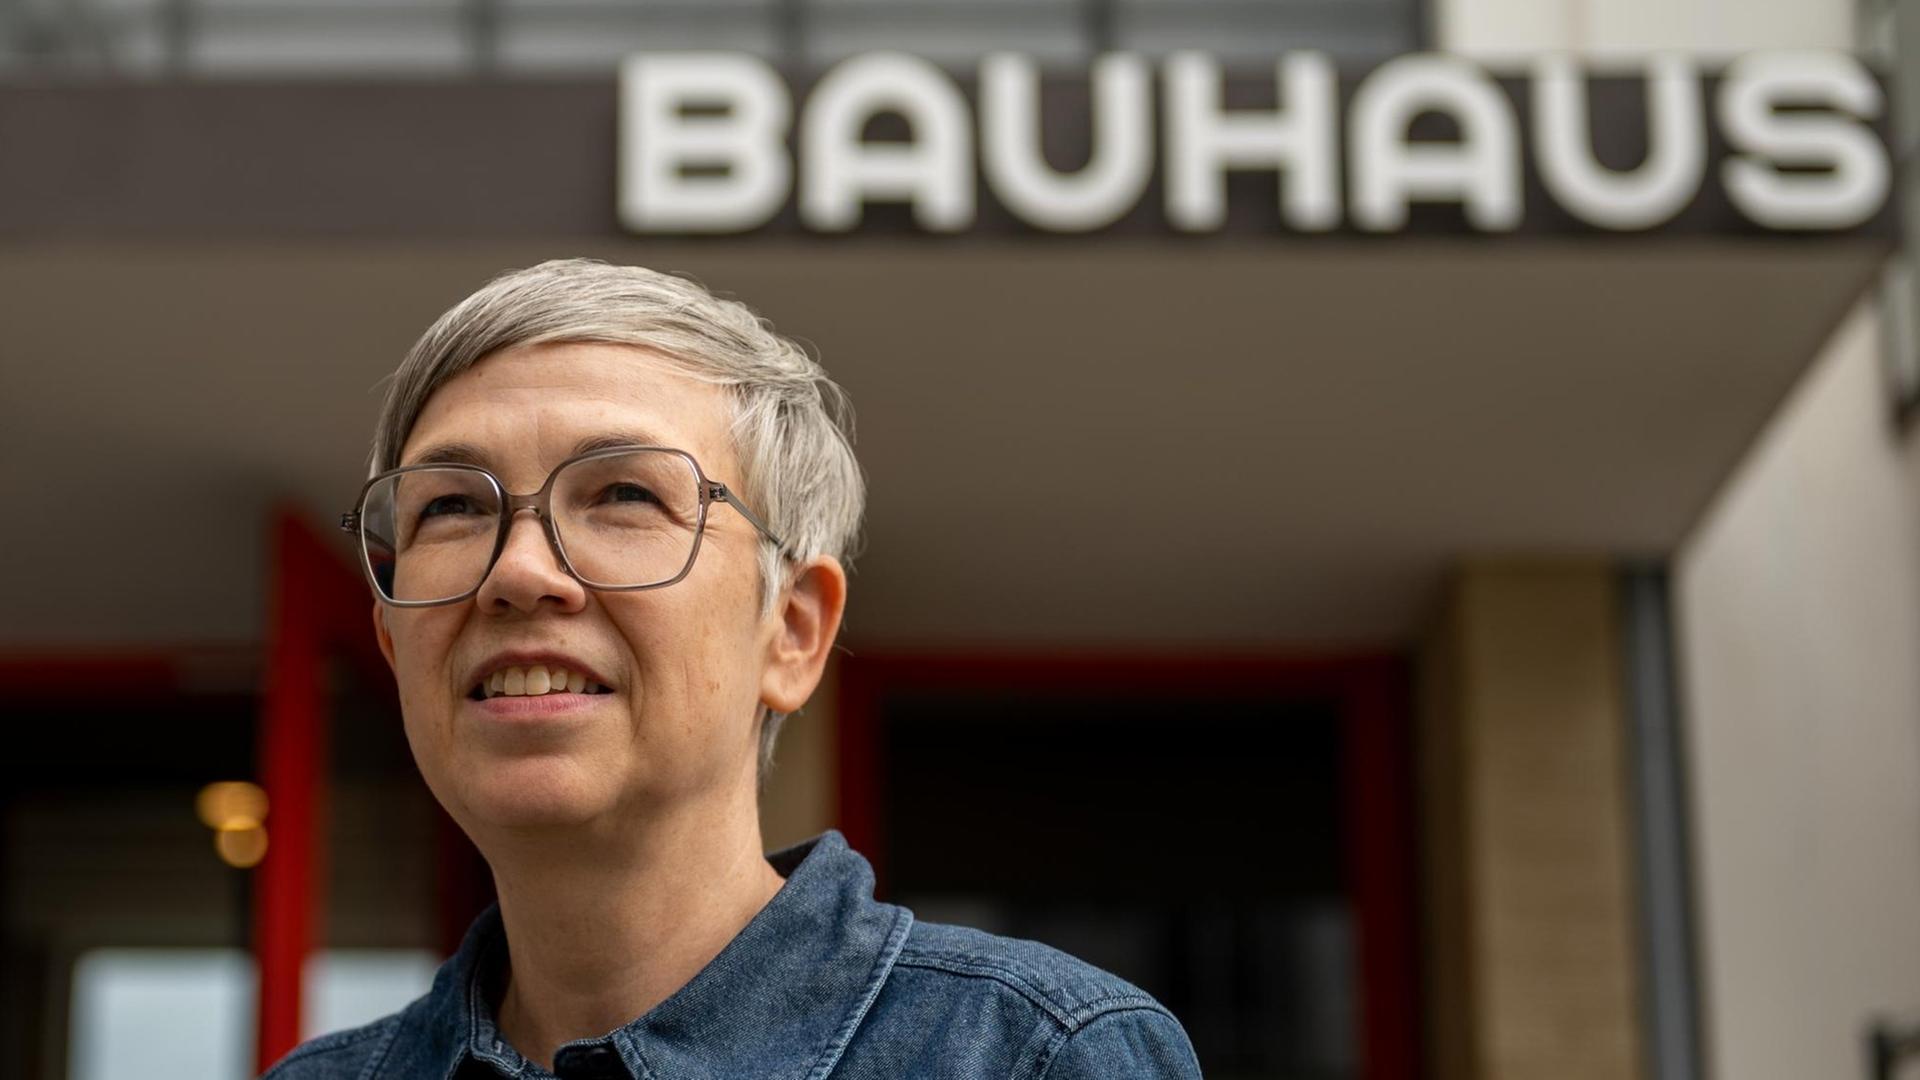 Die neue Bauhaus-Direktorin Barbara Steiner, graue Harre. silberne Brille, vor einem Bauhaus-Schriftzug.